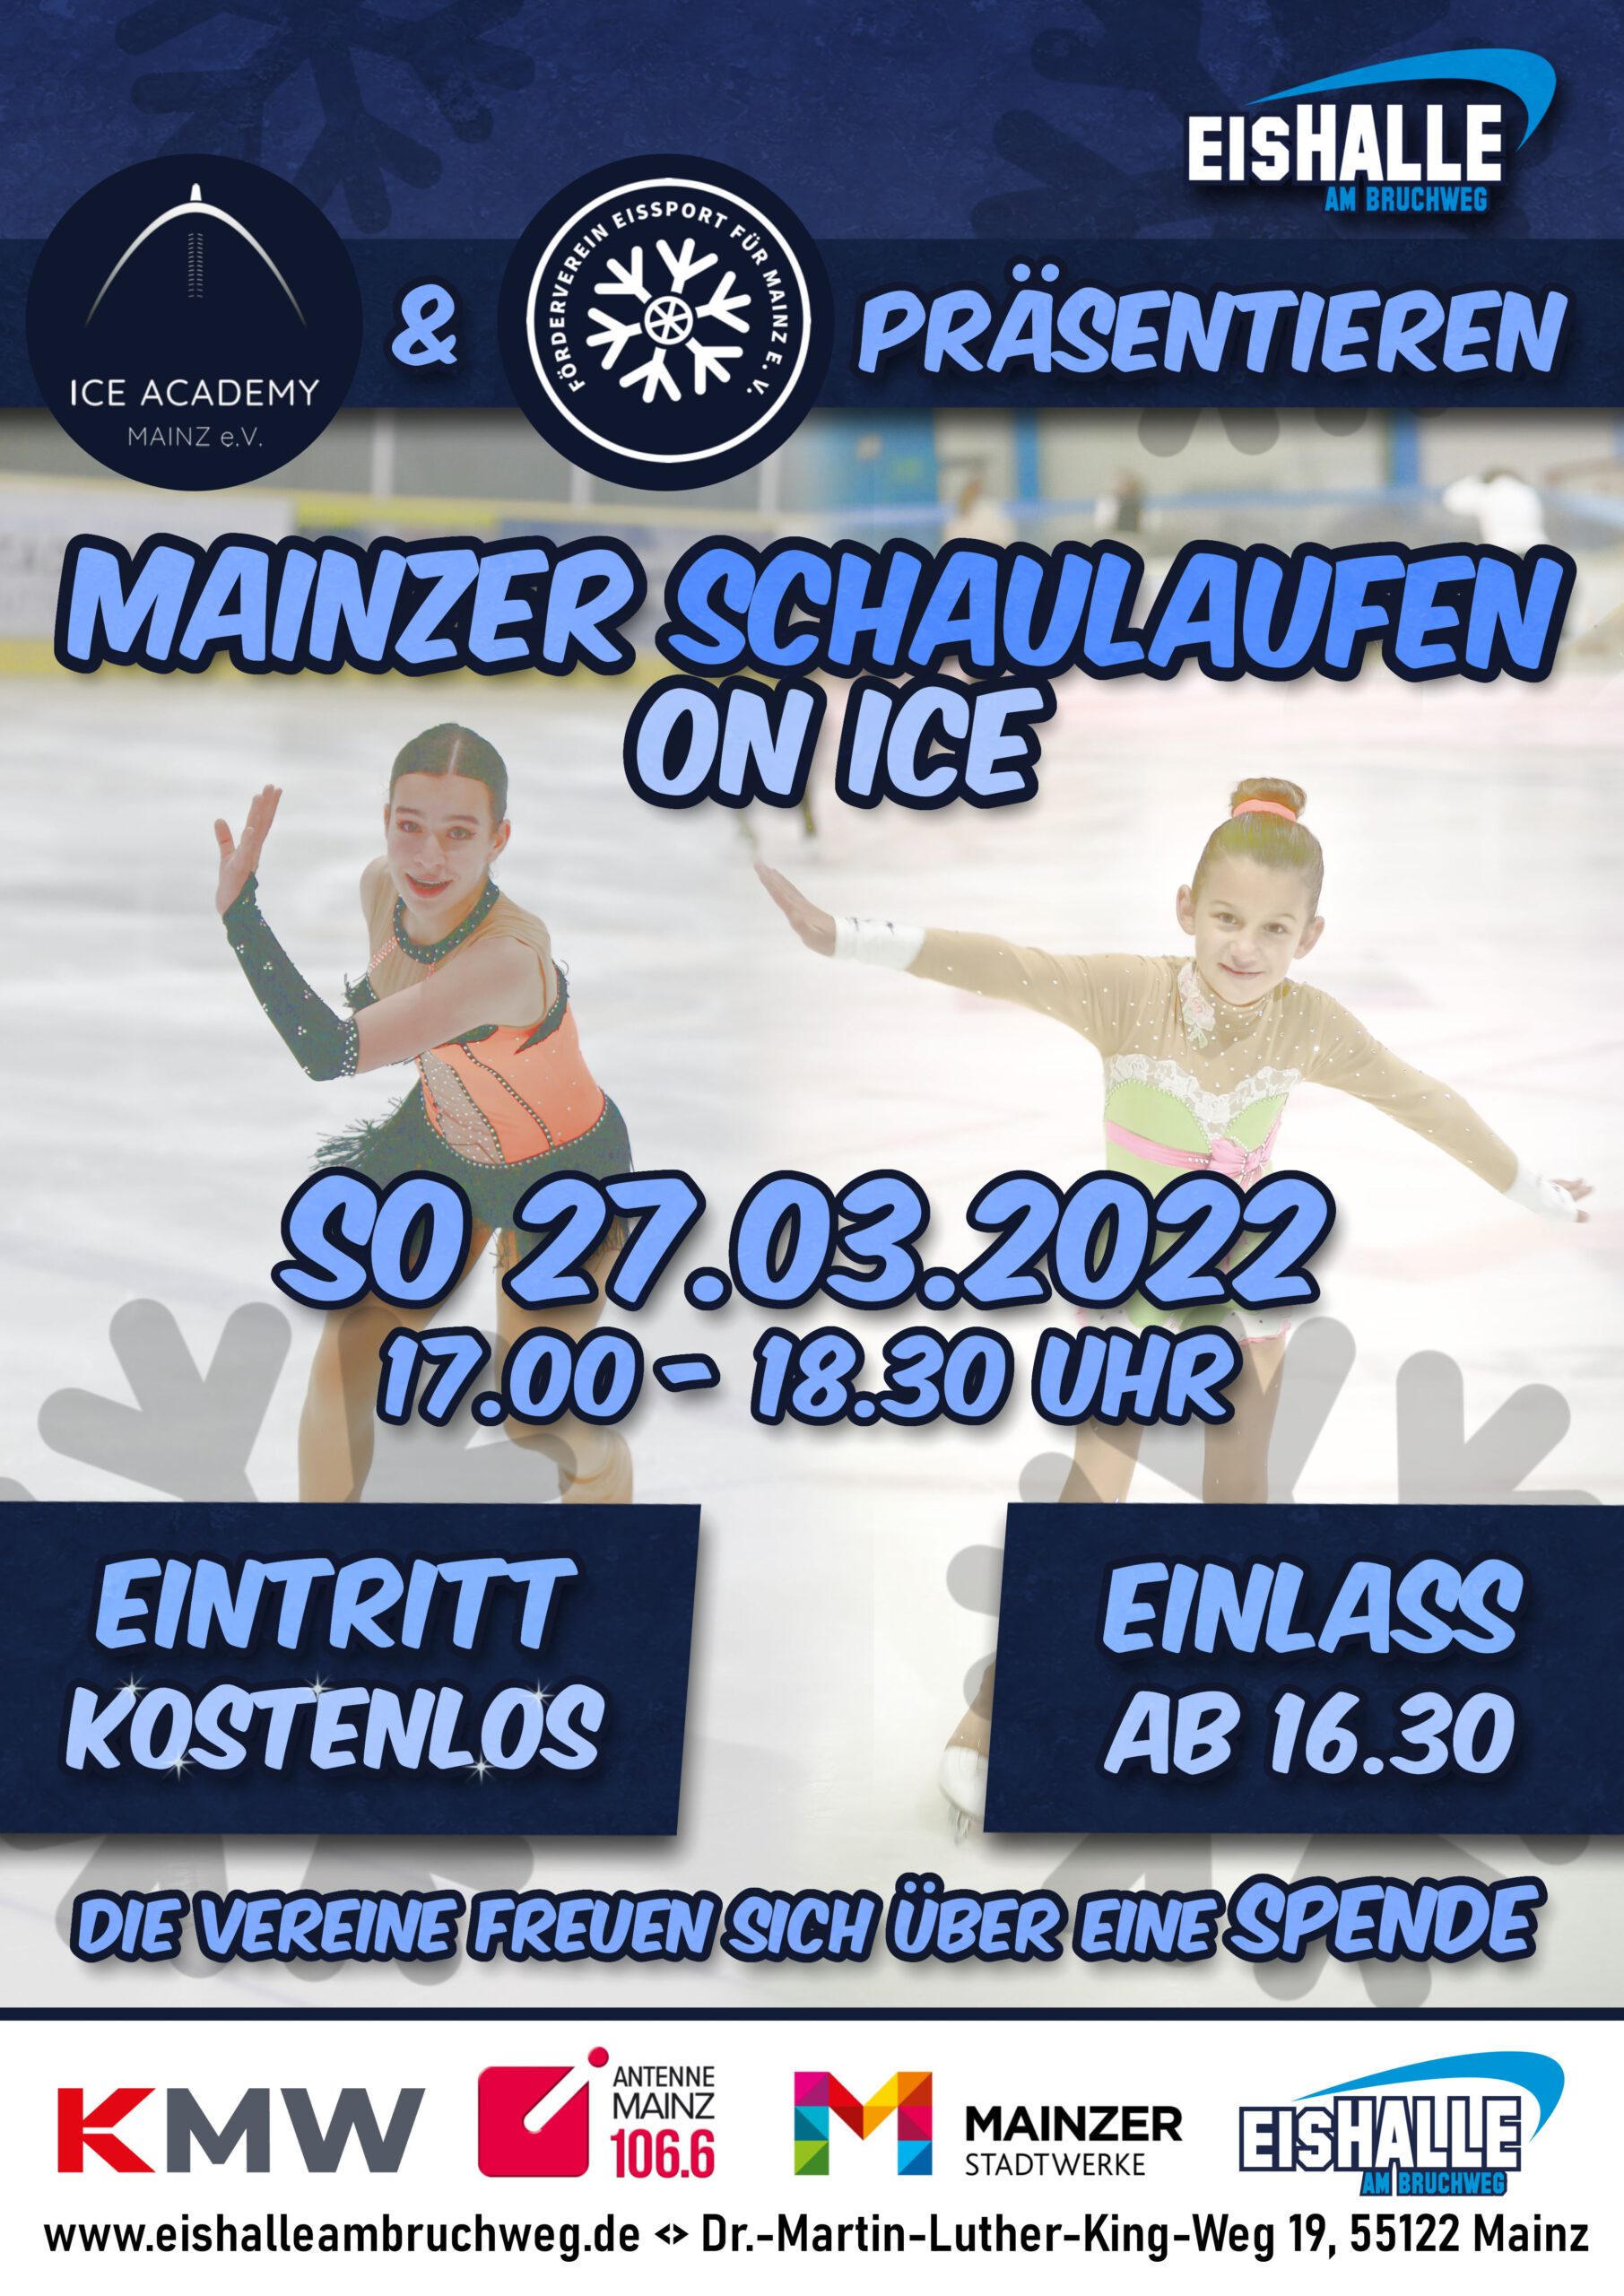 Mainzer Schaulaufen on ICE